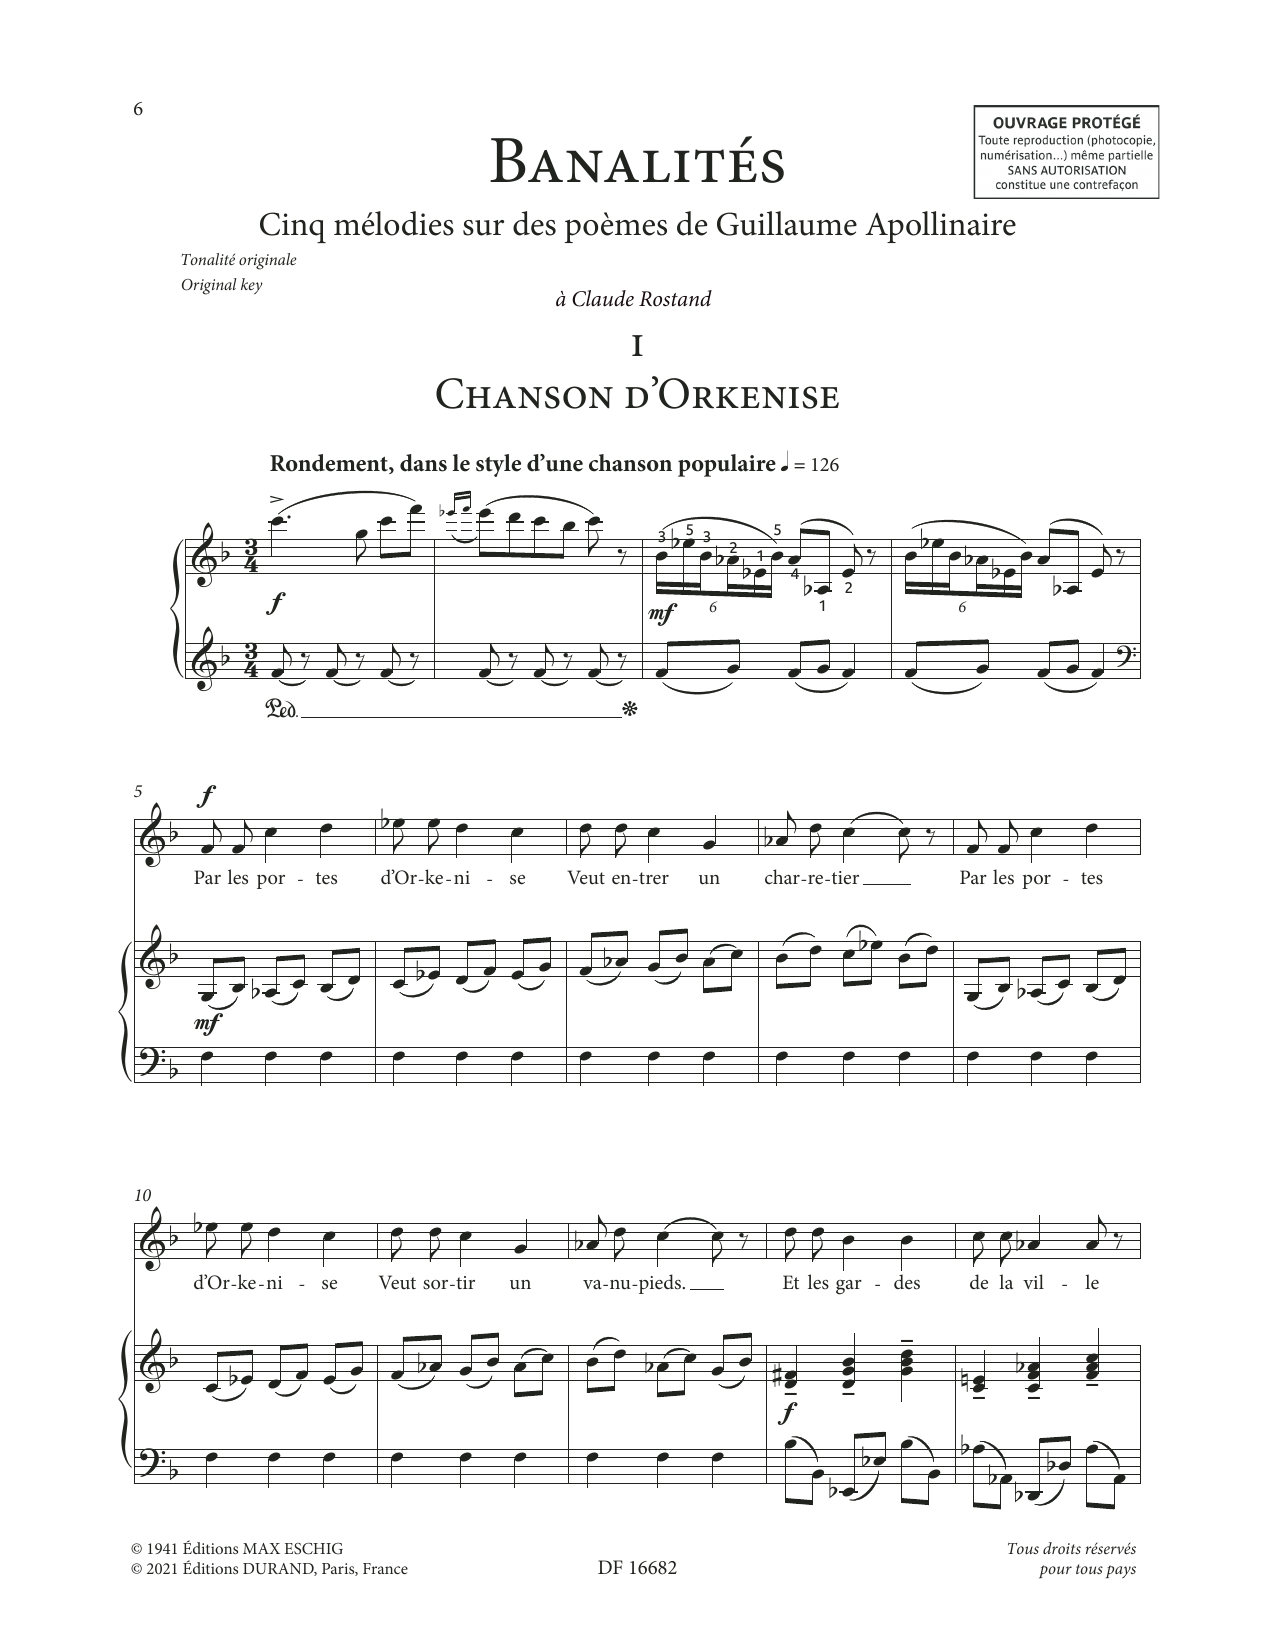 Francis Poulenc Banalités sheet music notes printable PDF score